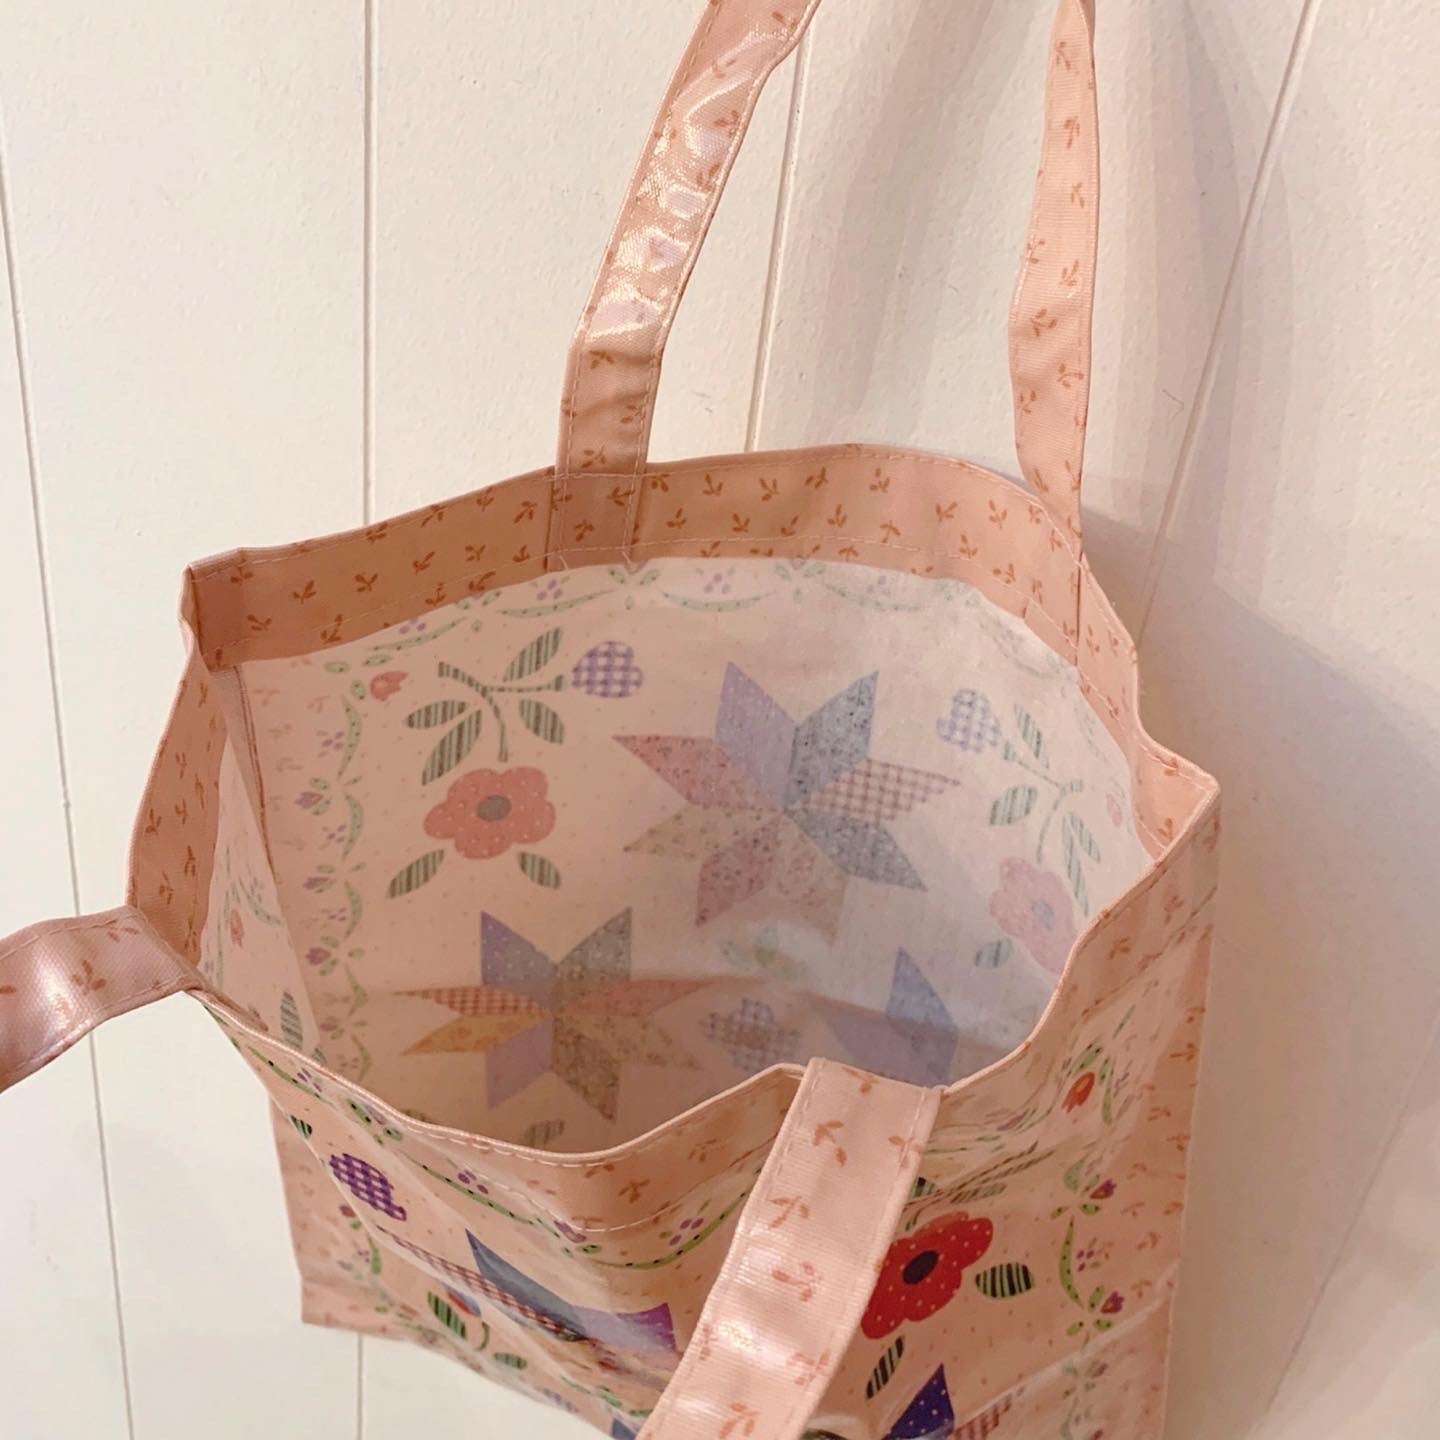 patchwork print tote bag